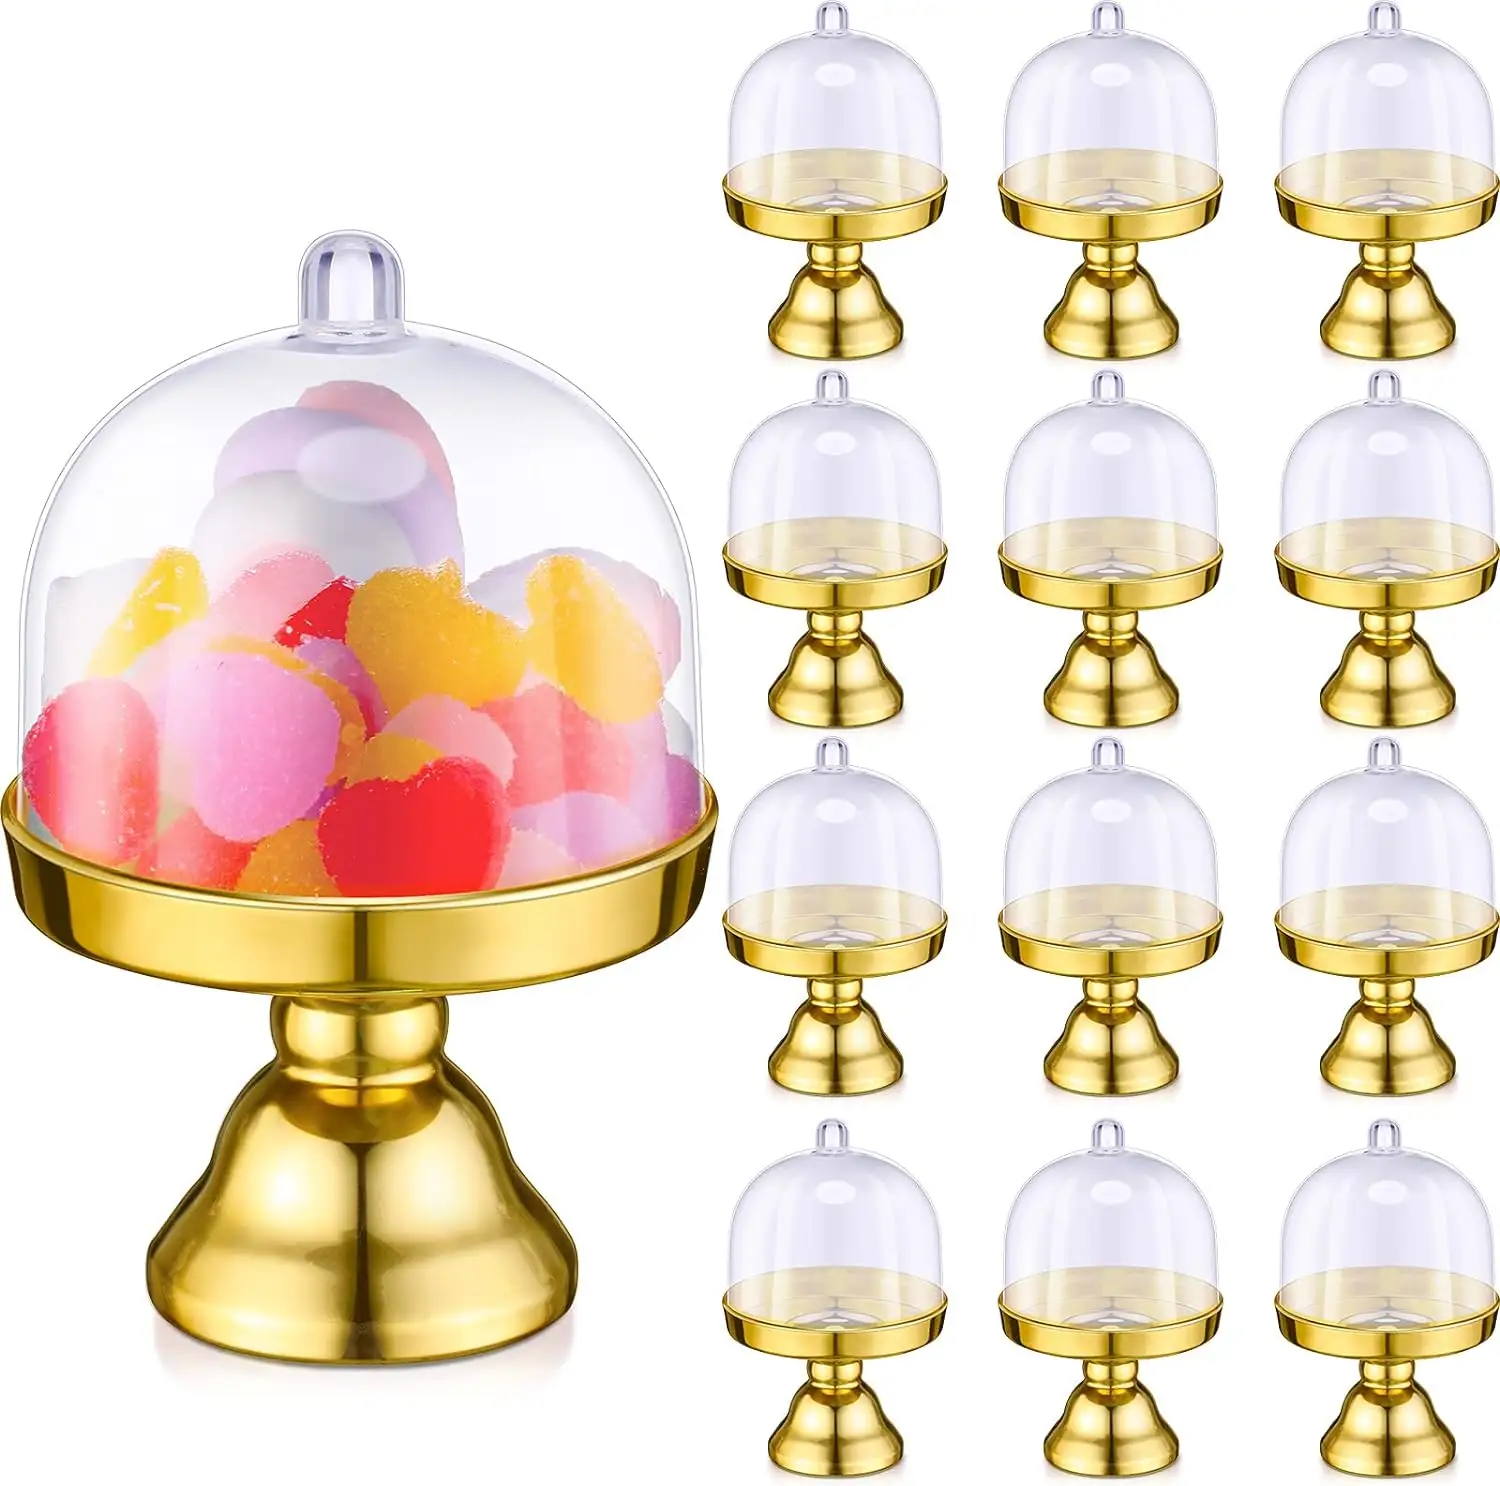 Suporte de plástico para cupcake e doces, recipiente com cúpula para cupcake e chocolate, placa de exibição com cúpula para festas, 12 unidades